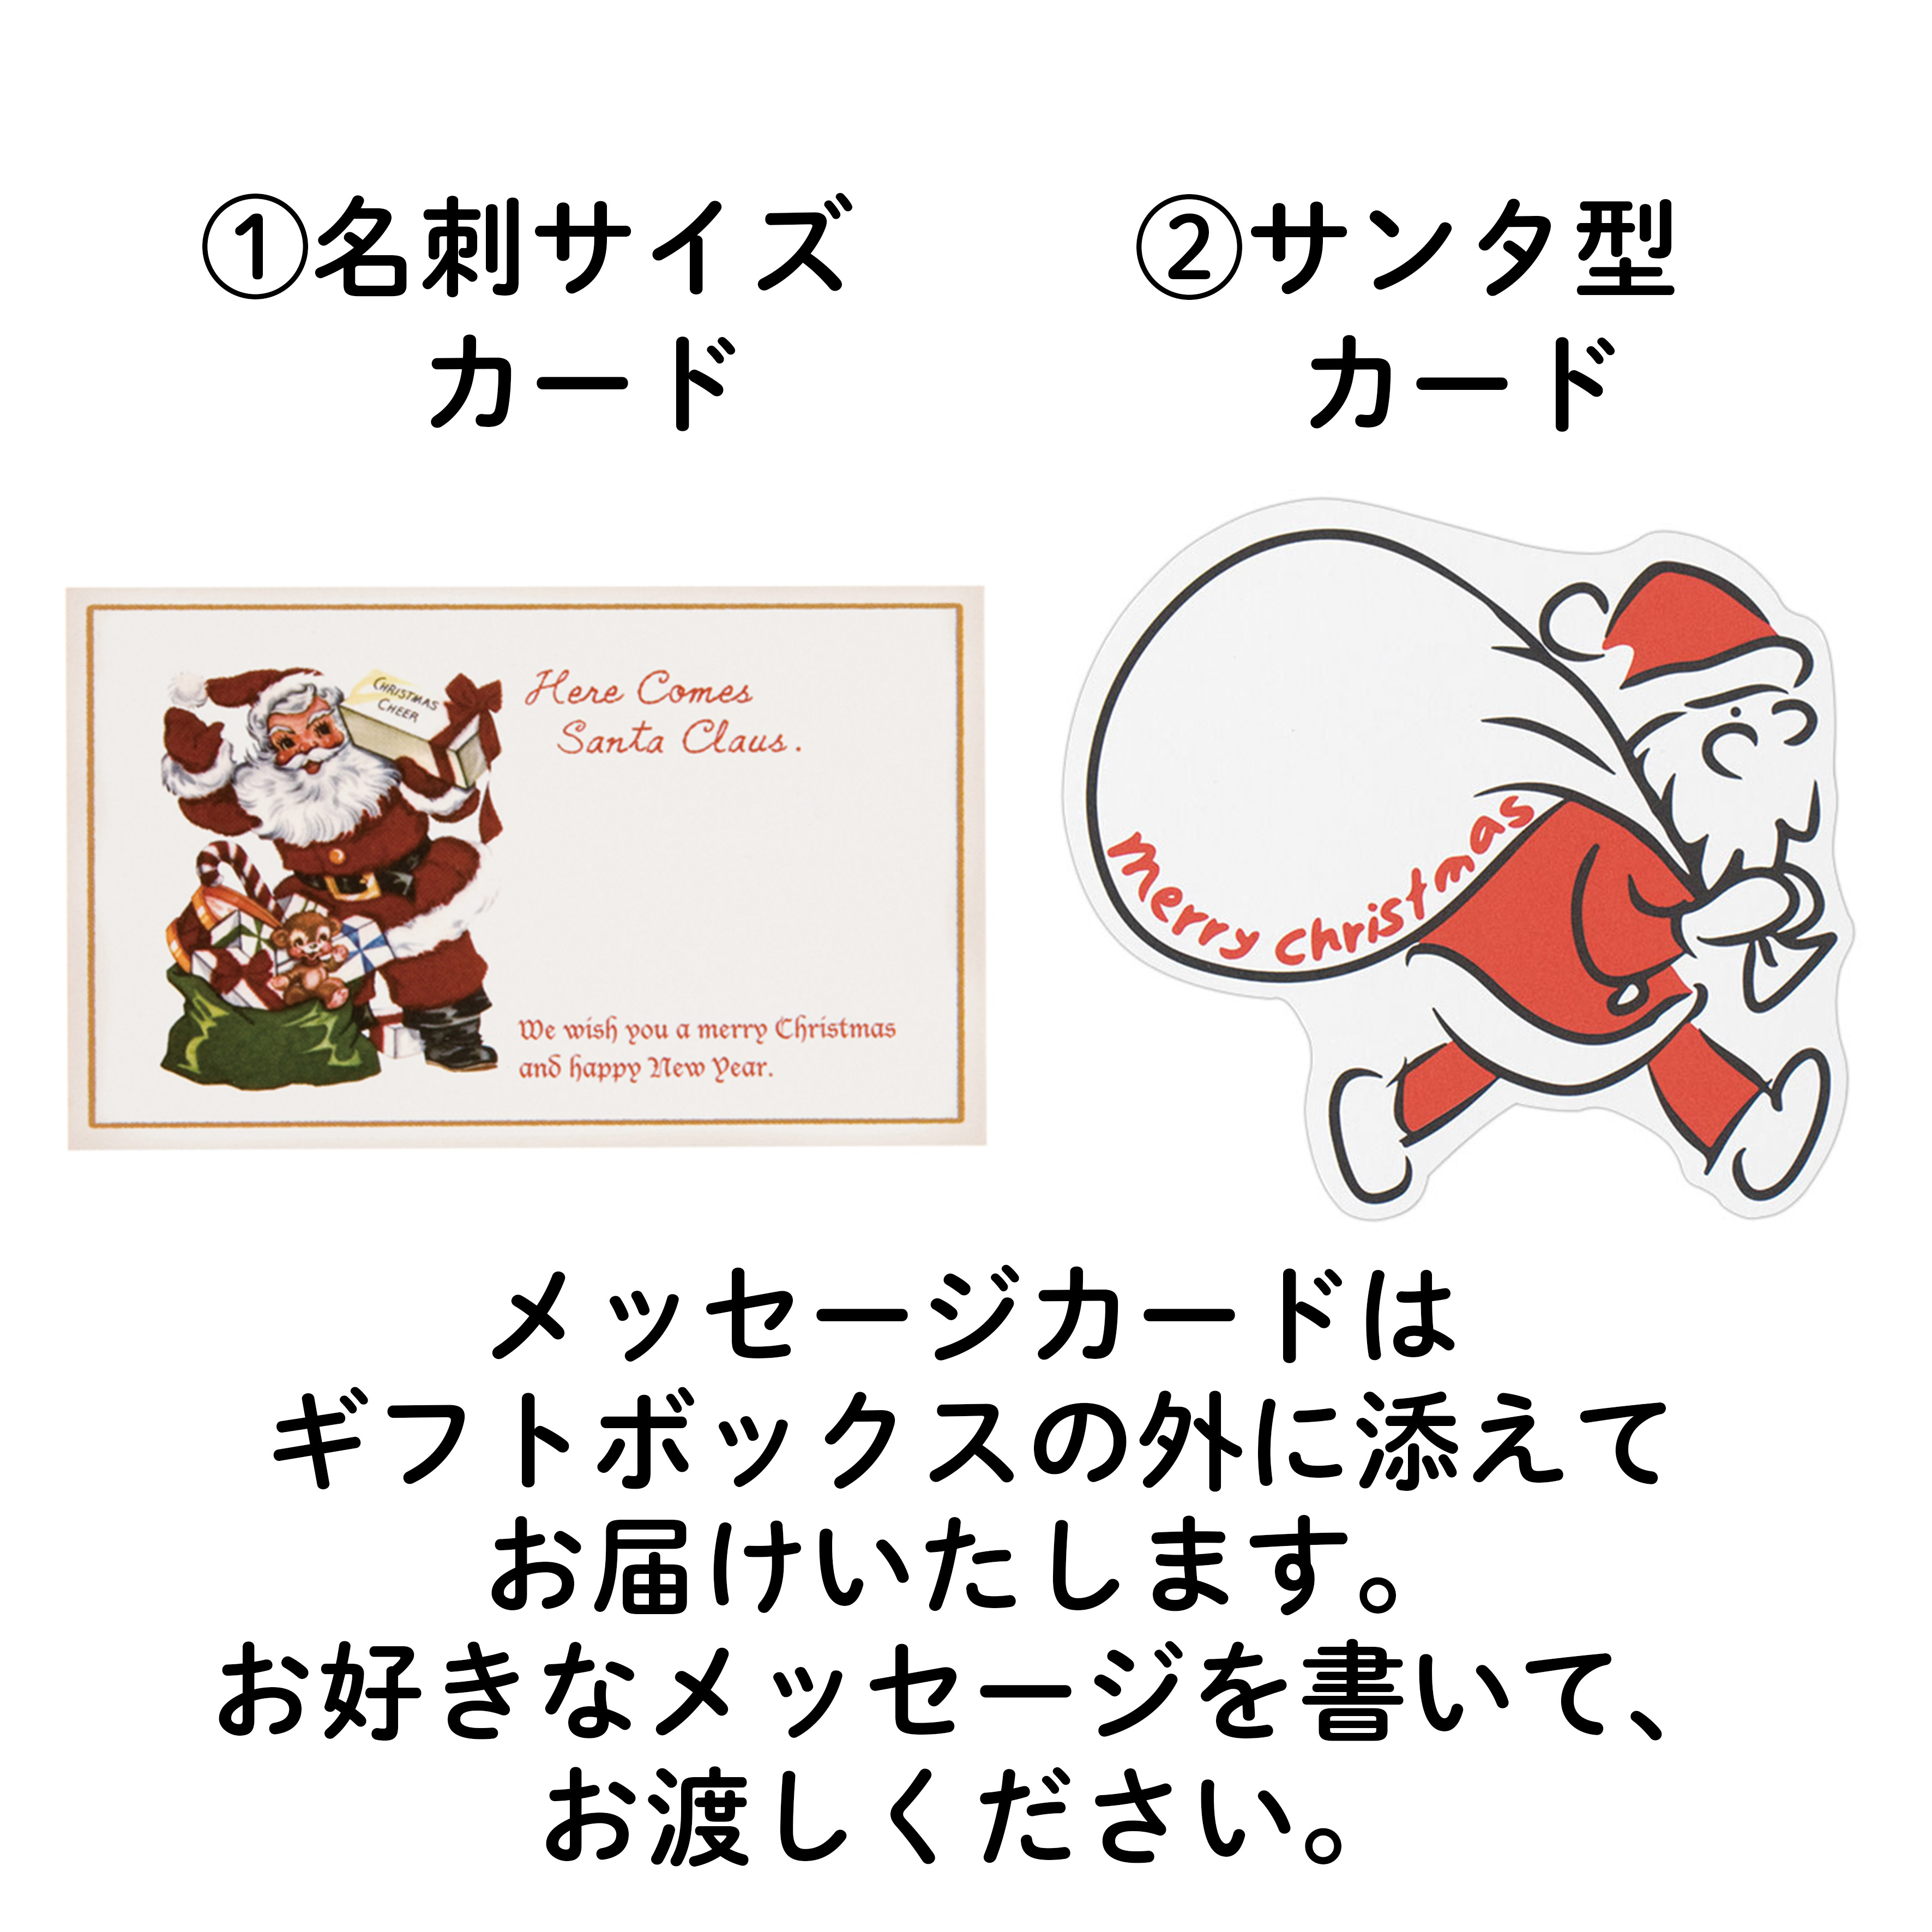 【クリスマス】フッツェルブロート 1本と飾りパンマグネット